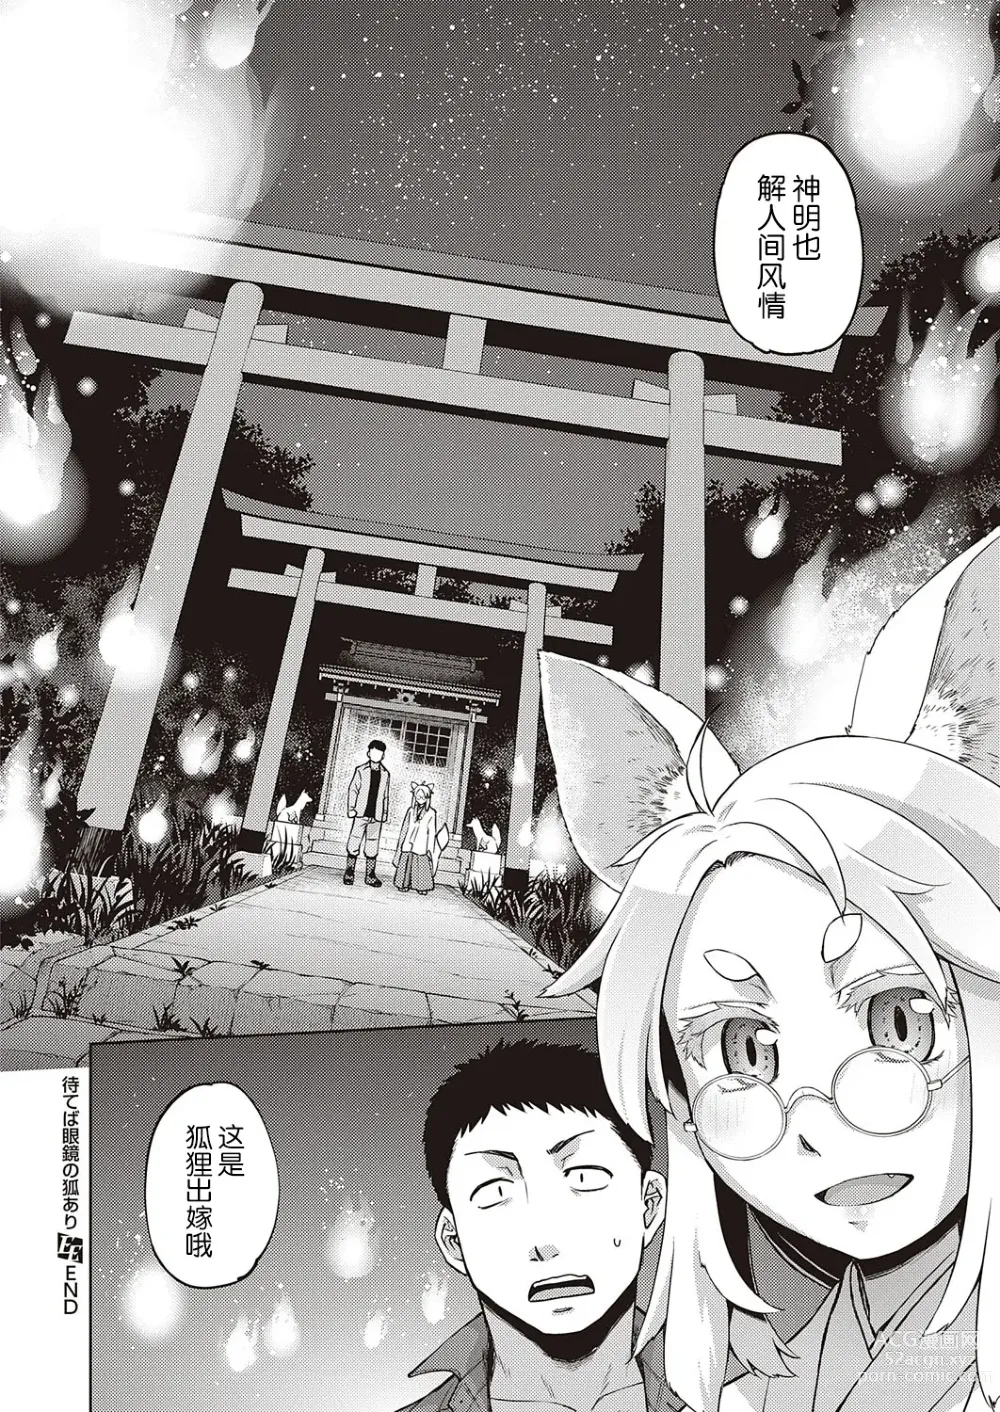 Page 24 of manga Mate ba Megane no Kitsune ari